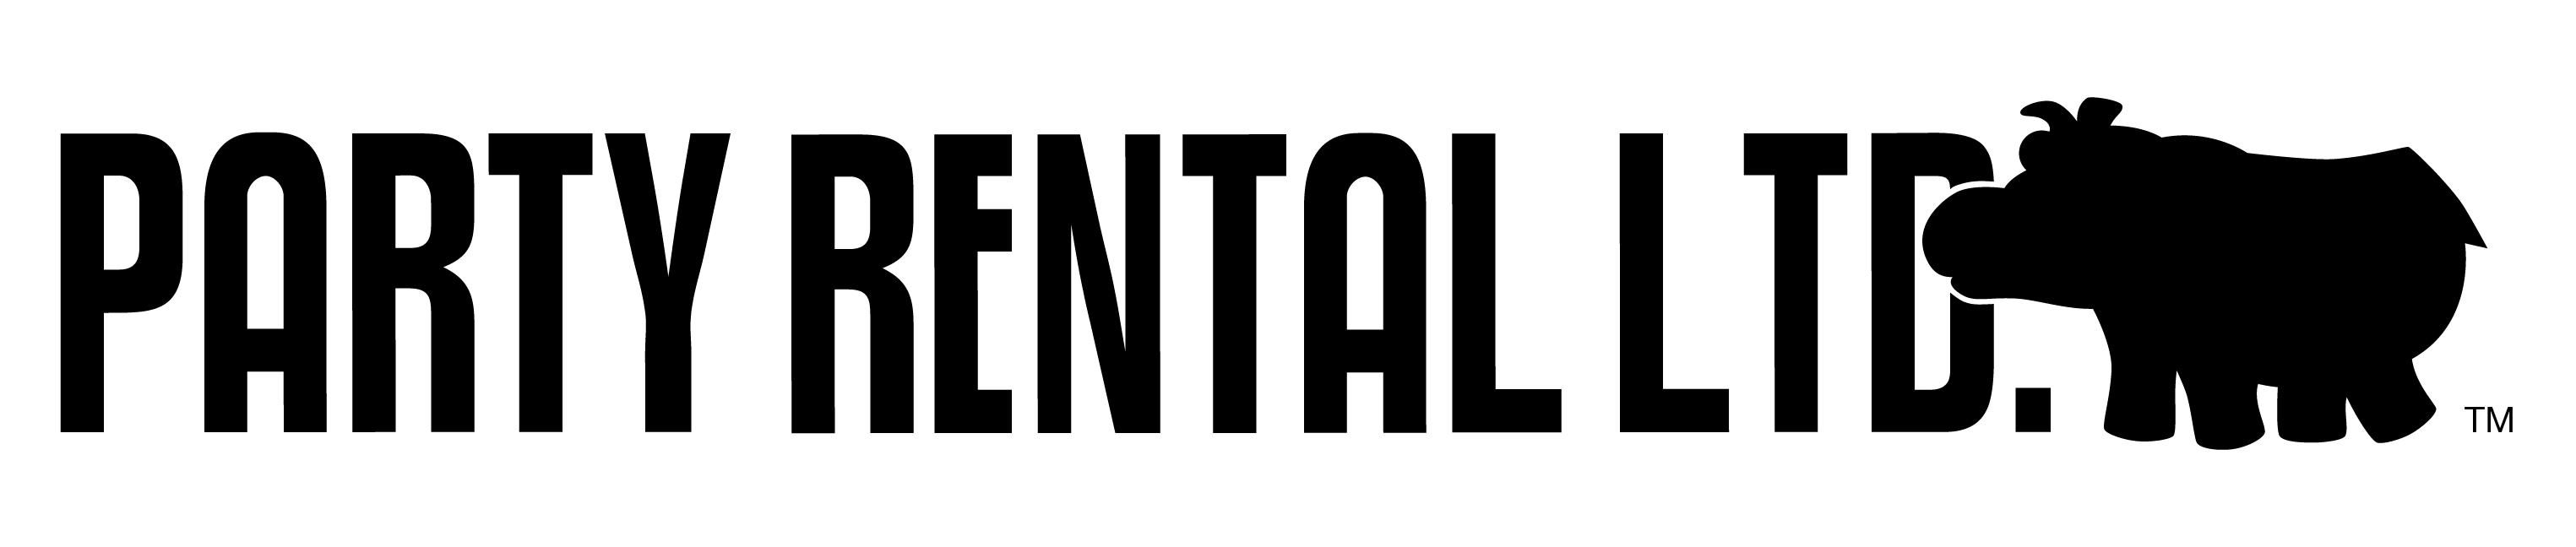 Black Monochrome Horizontal Party Rental Ltd. Logo